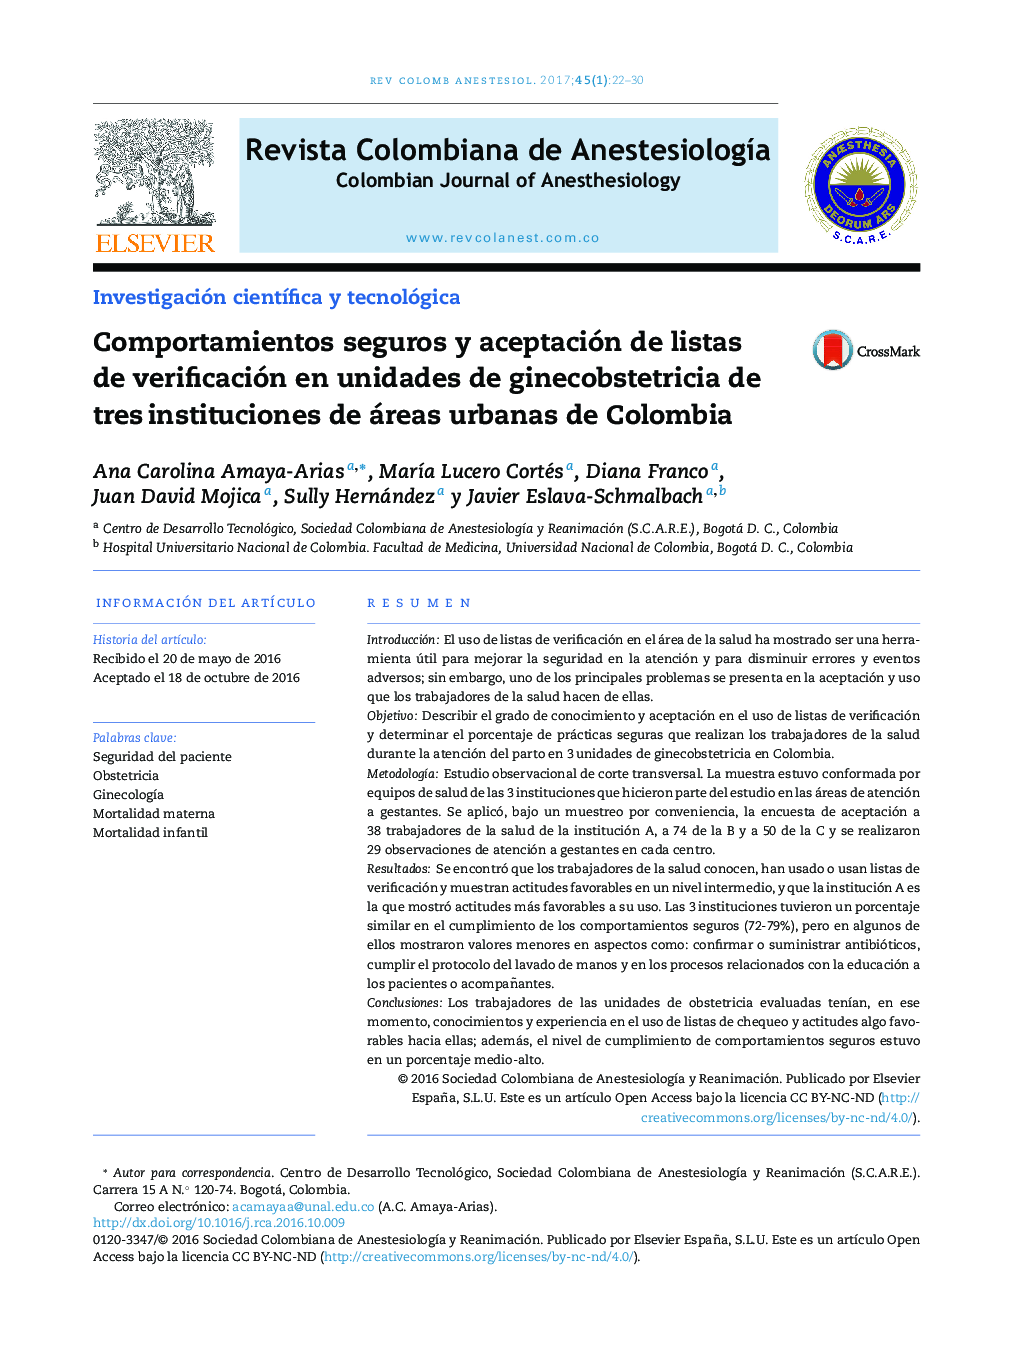 Comportamientos seguros y aceptación de listas de verificación en unidades de ginecobstetricia de tresÂ instituciones de áreas urbanas de Colombia